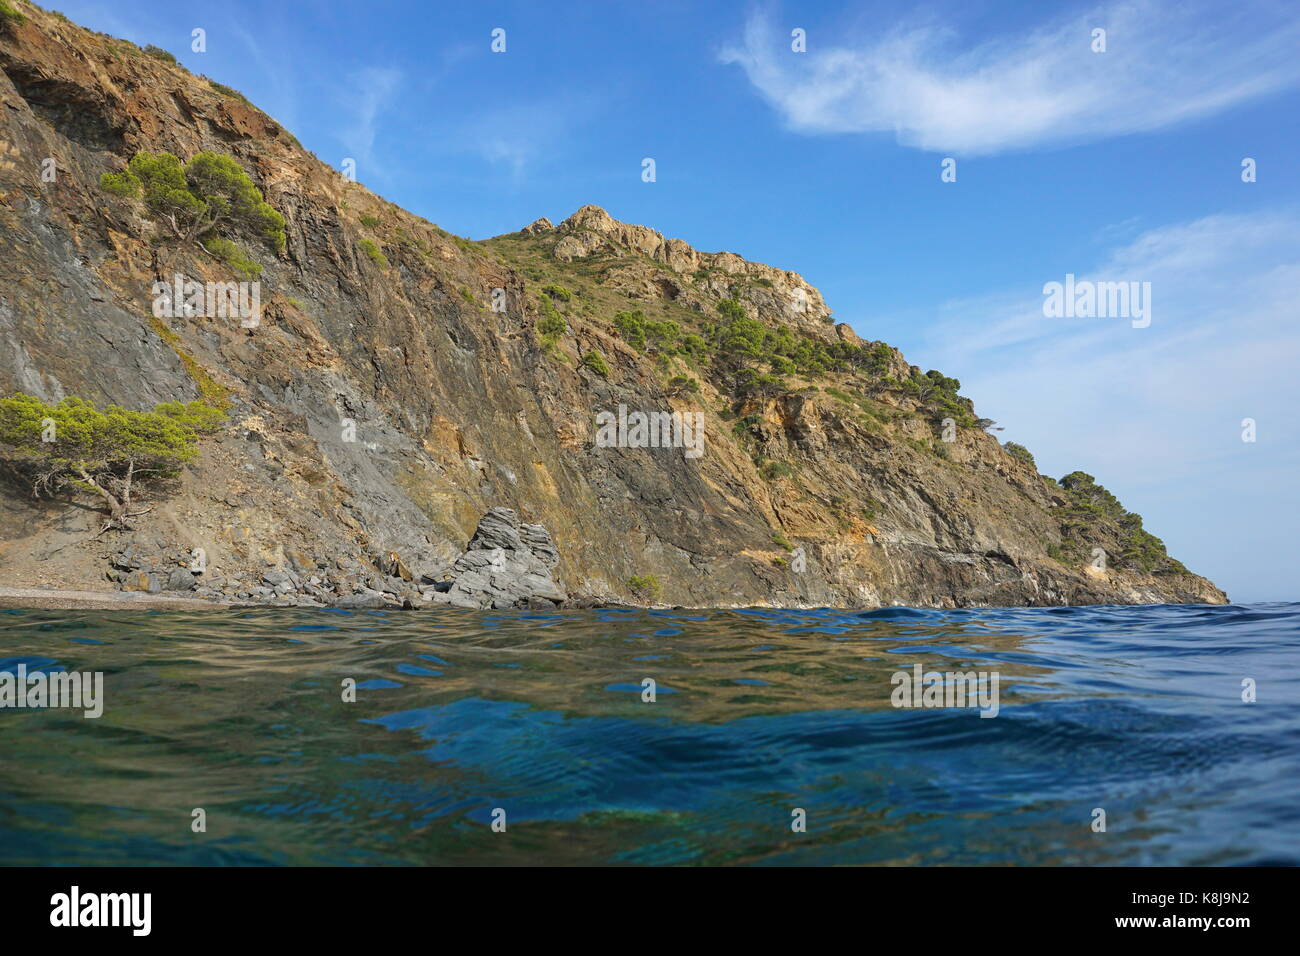 Spanien Costa Brava Küstenlandschaft Cliff von der Wasseroberfläche gesehen, Cap Norfeu, Mittelmeer, Alt Emporda, Girona, Katalonien Stockfoto